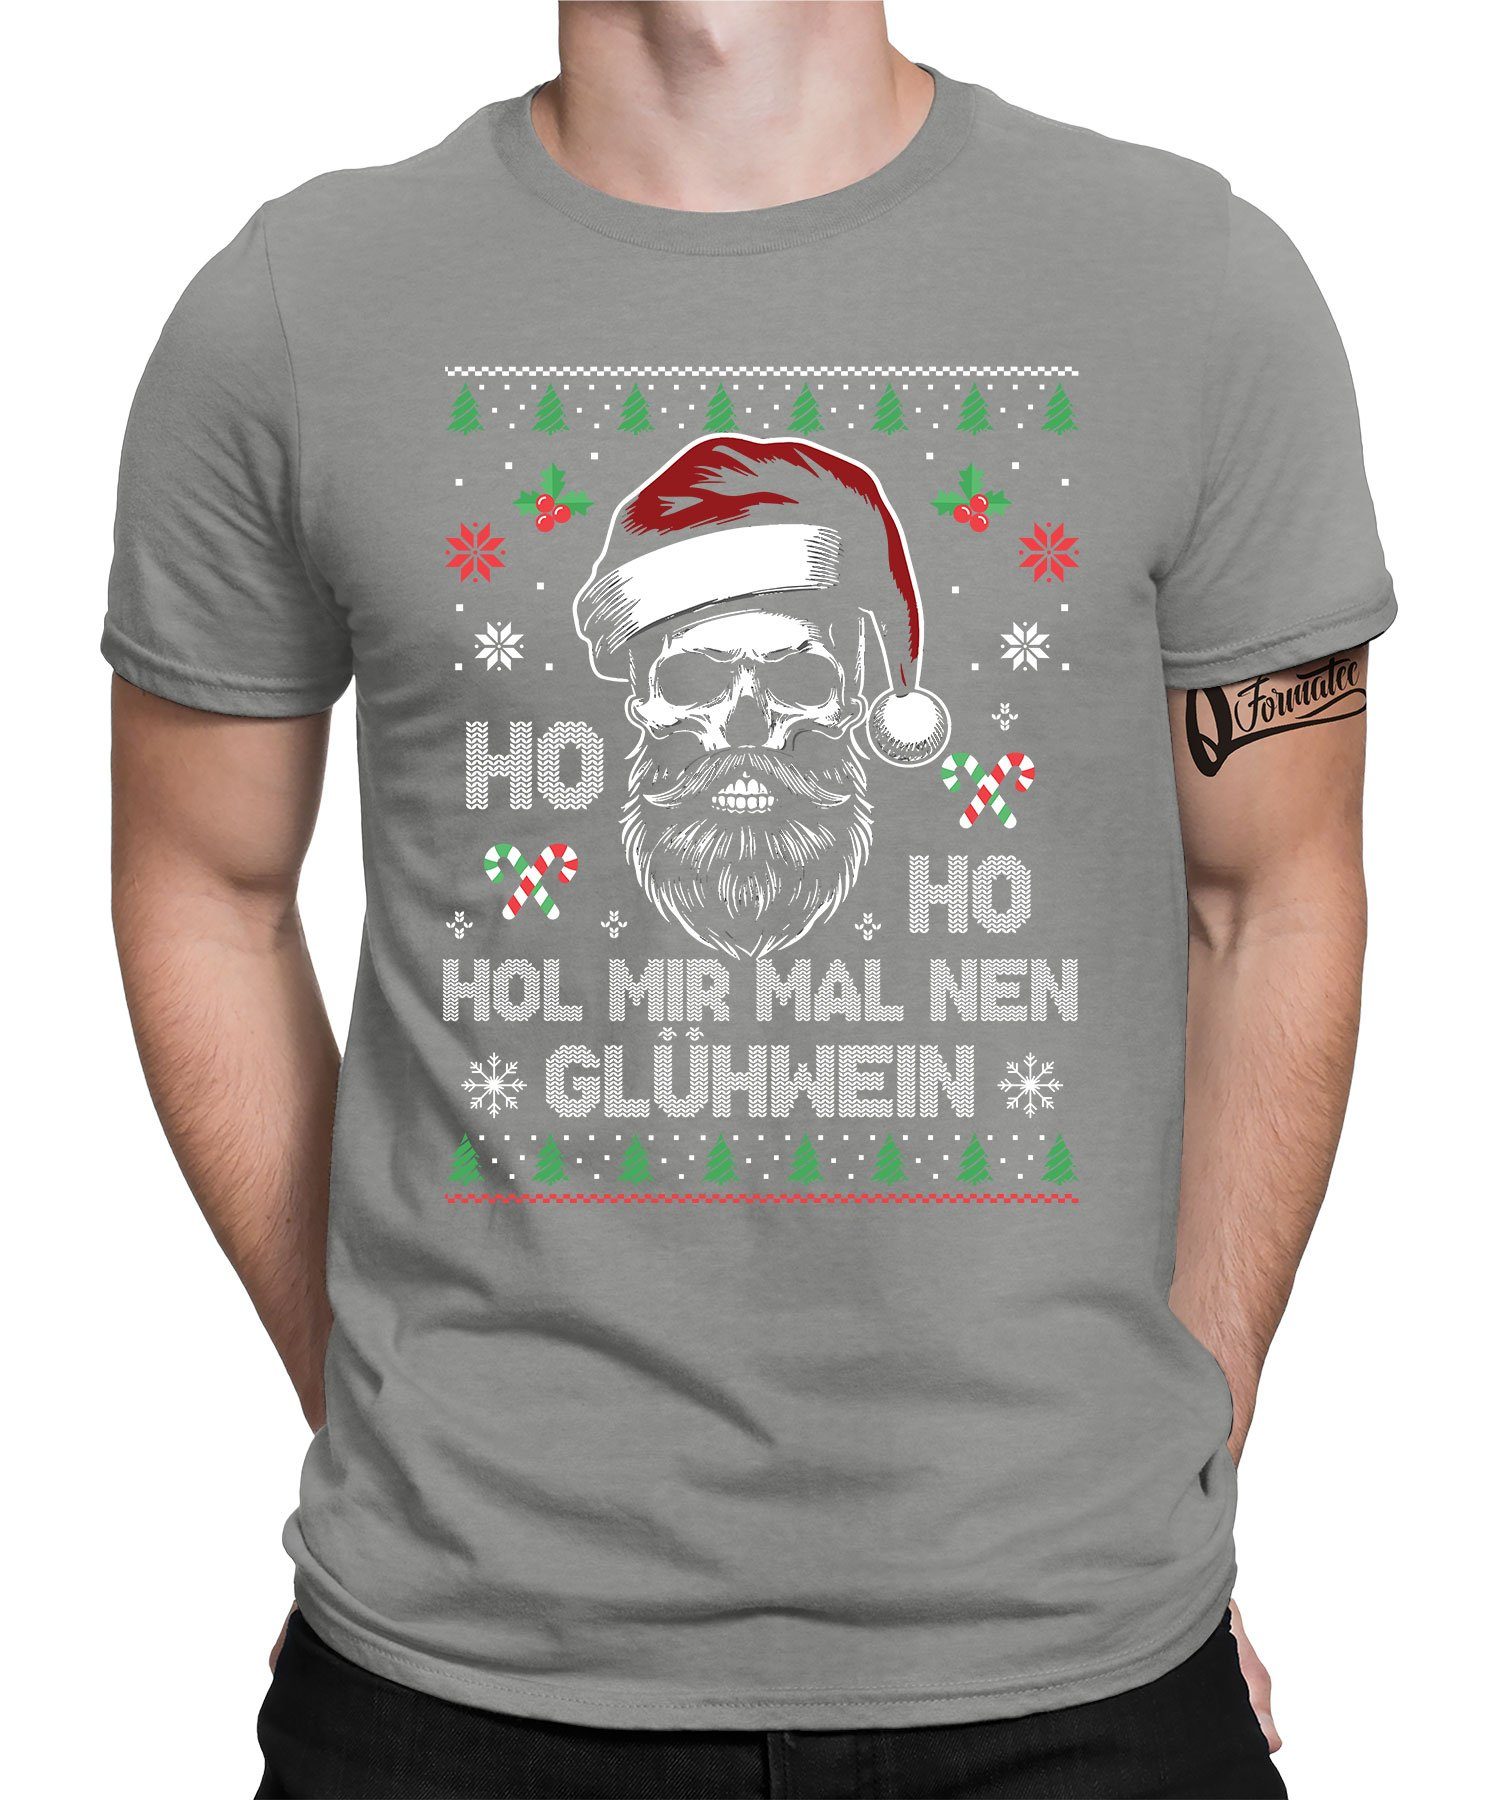 Formatee Grau Ho - T-Shirt Herren Ho Heather Kurzarmshirt Glühwein (1-tlg) X-mas Weihnachten Weihnachtsgeschenk Quattro